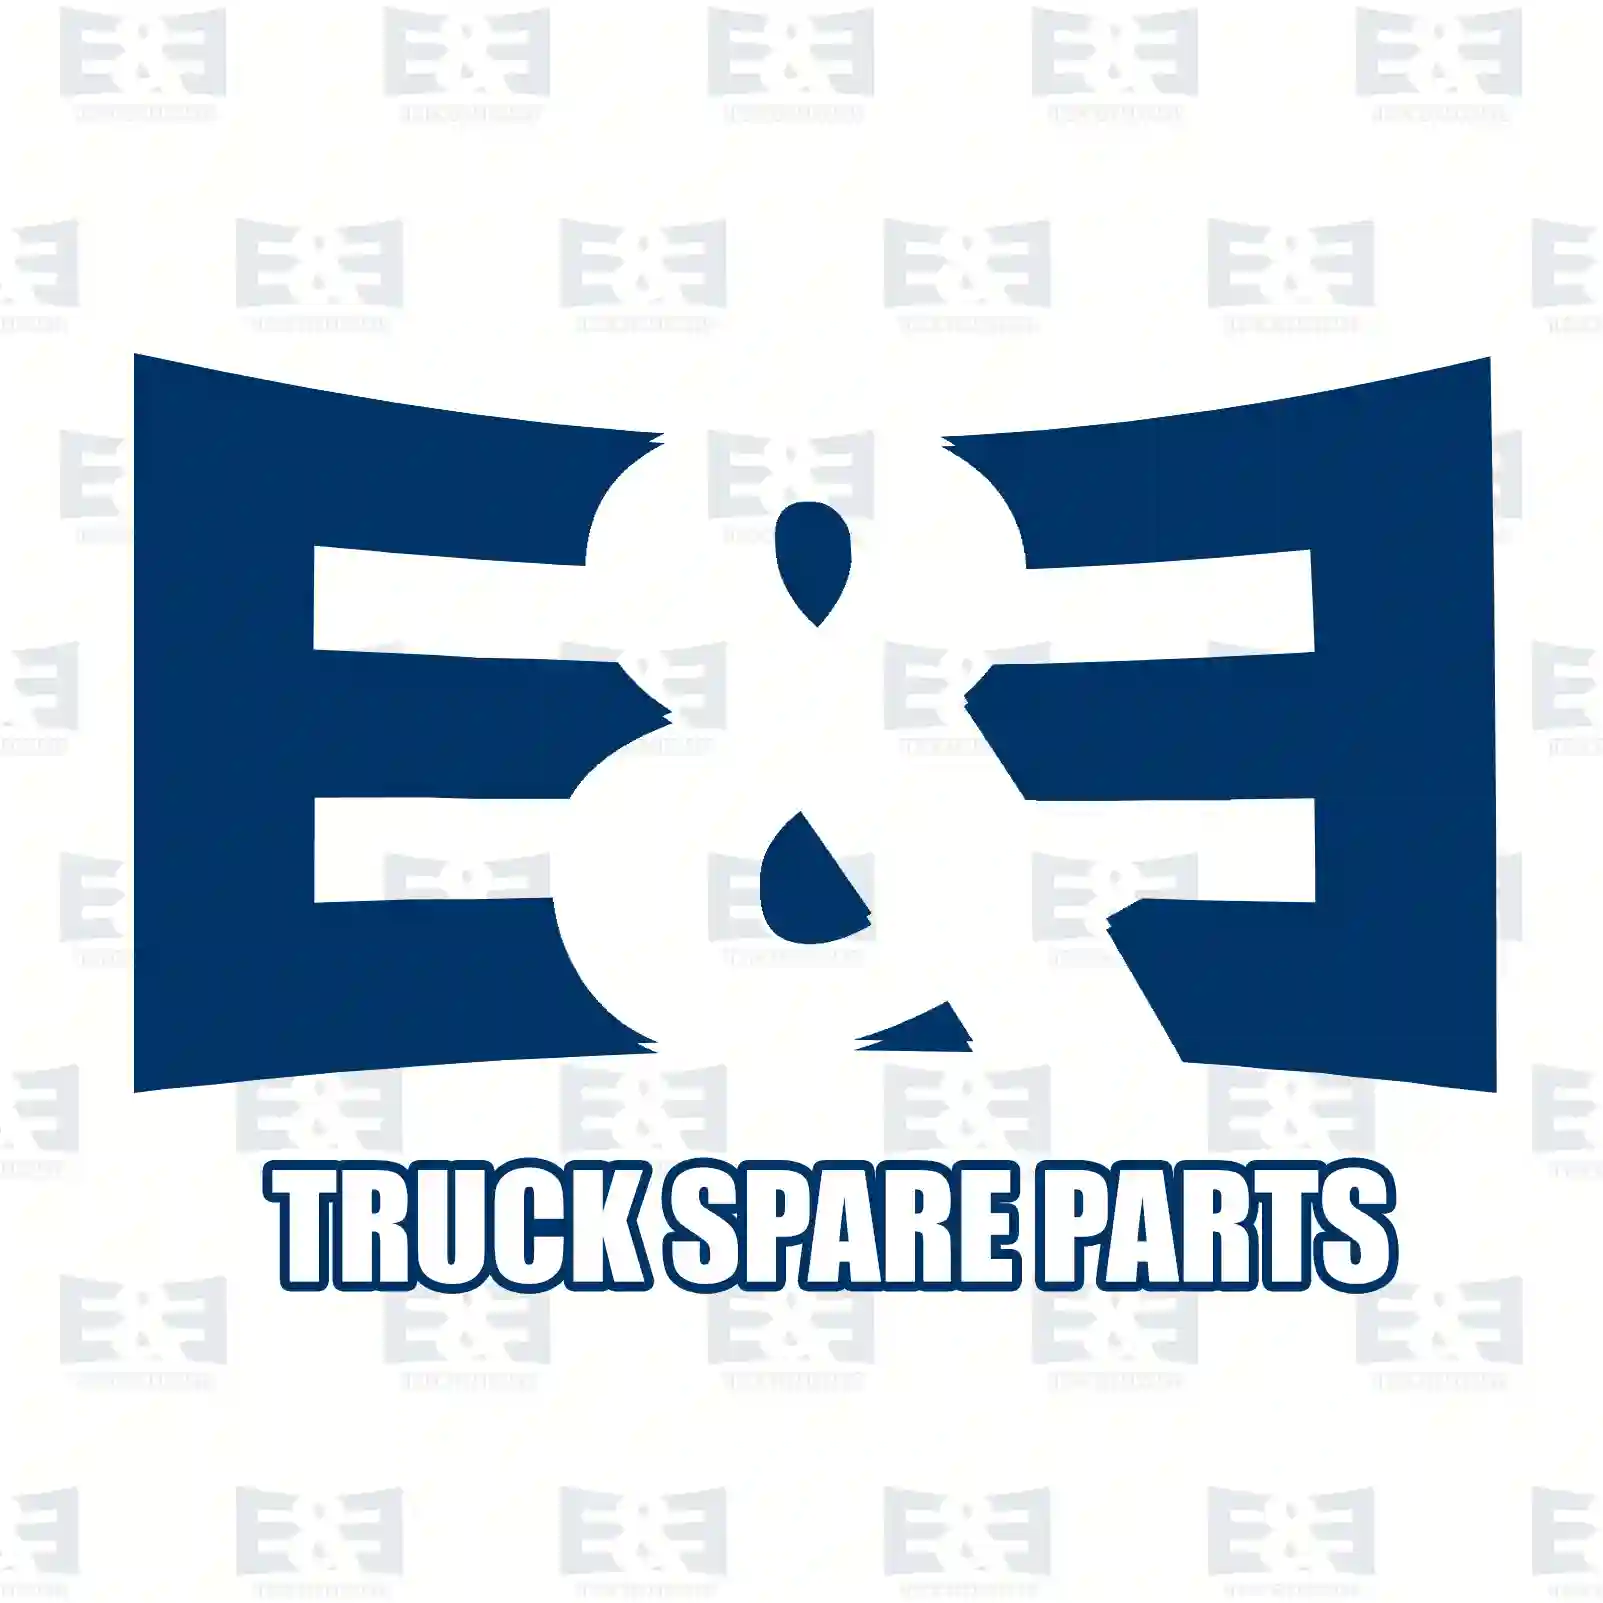 Propeller shaft, 2E2276727, 500391641, 504019 ||  2E2276727 E&E Truck Spare Parts | Truck Spare Parts, Auotomotive Spare Parts Propeller shaft, 2E2276727, 500391641, 504019 ||  2E2276727 E&E Truck Spare Parts | Truck Spare Parts, Auotomotive Spare Parts